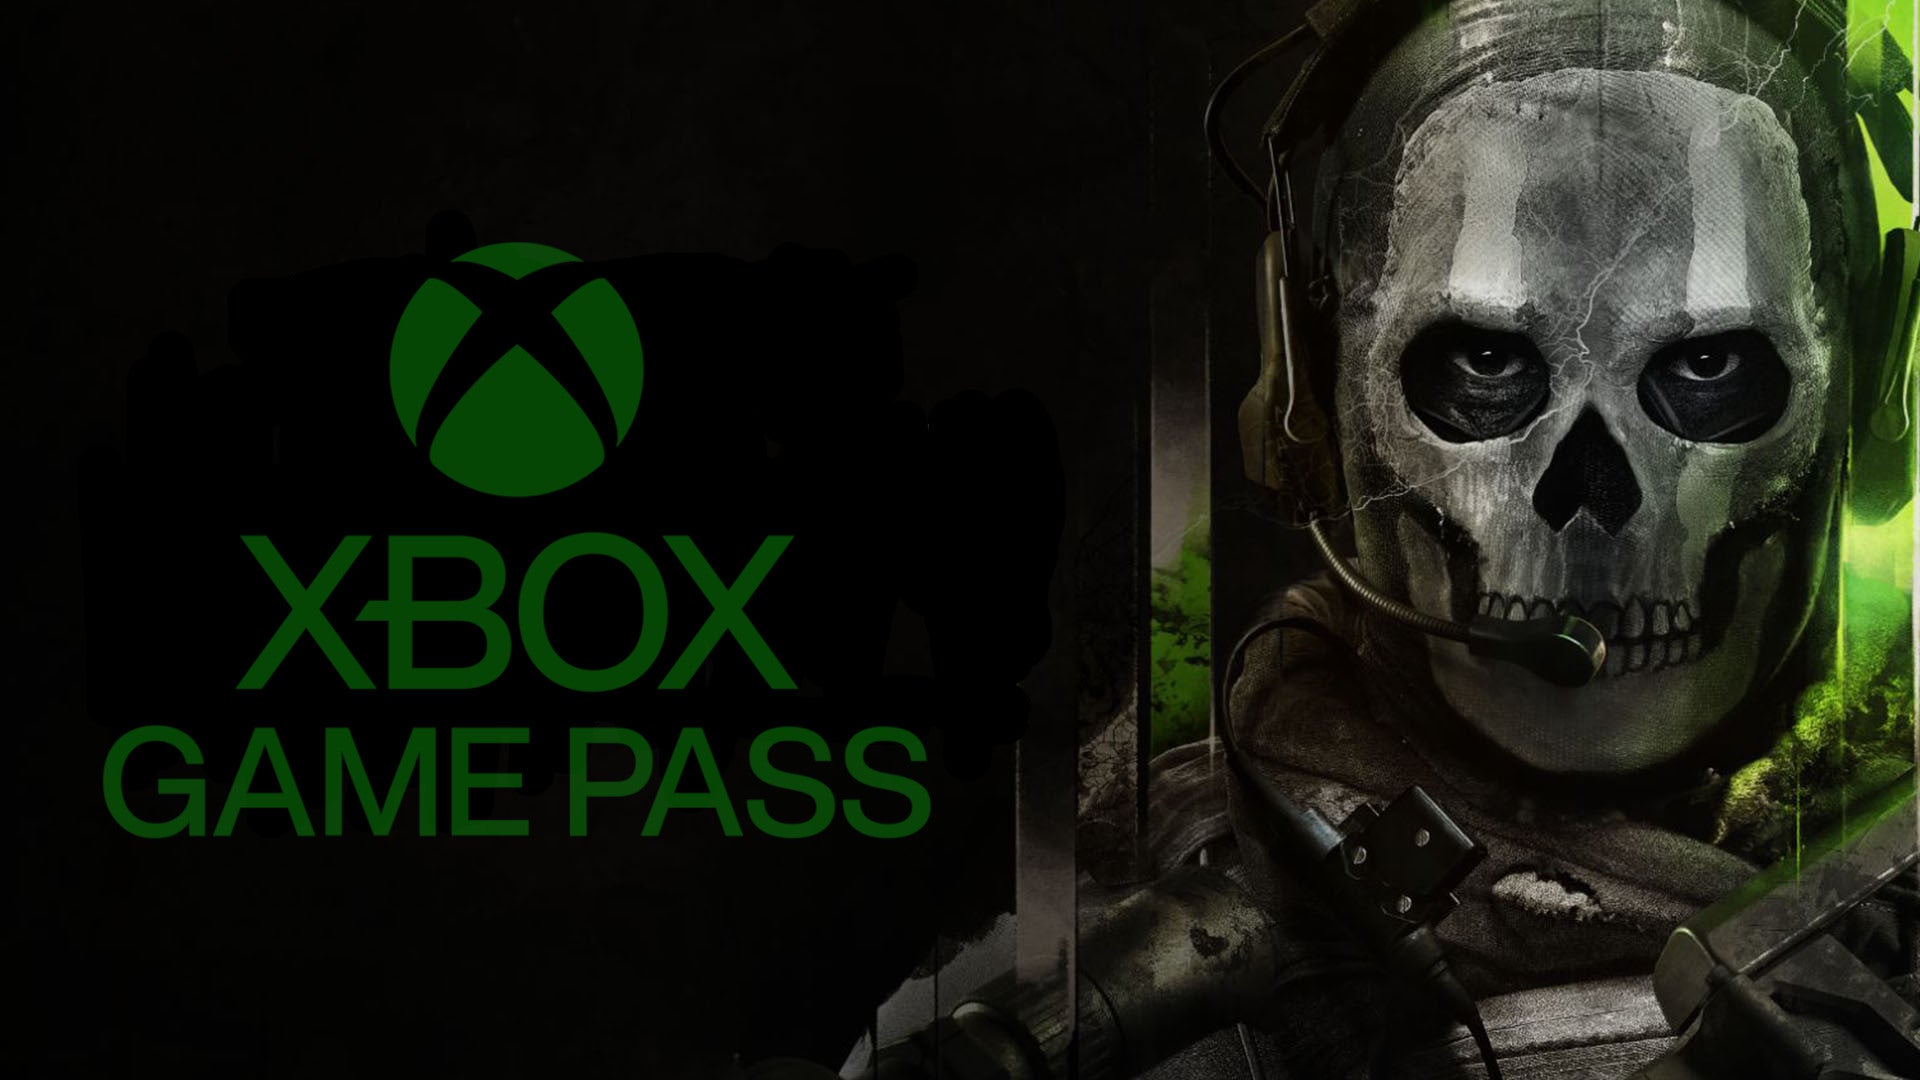 Bilder zu Microsoft: Mit einem Xbox-exklusiven Call of Duty würde das Unternehmen Minus machen